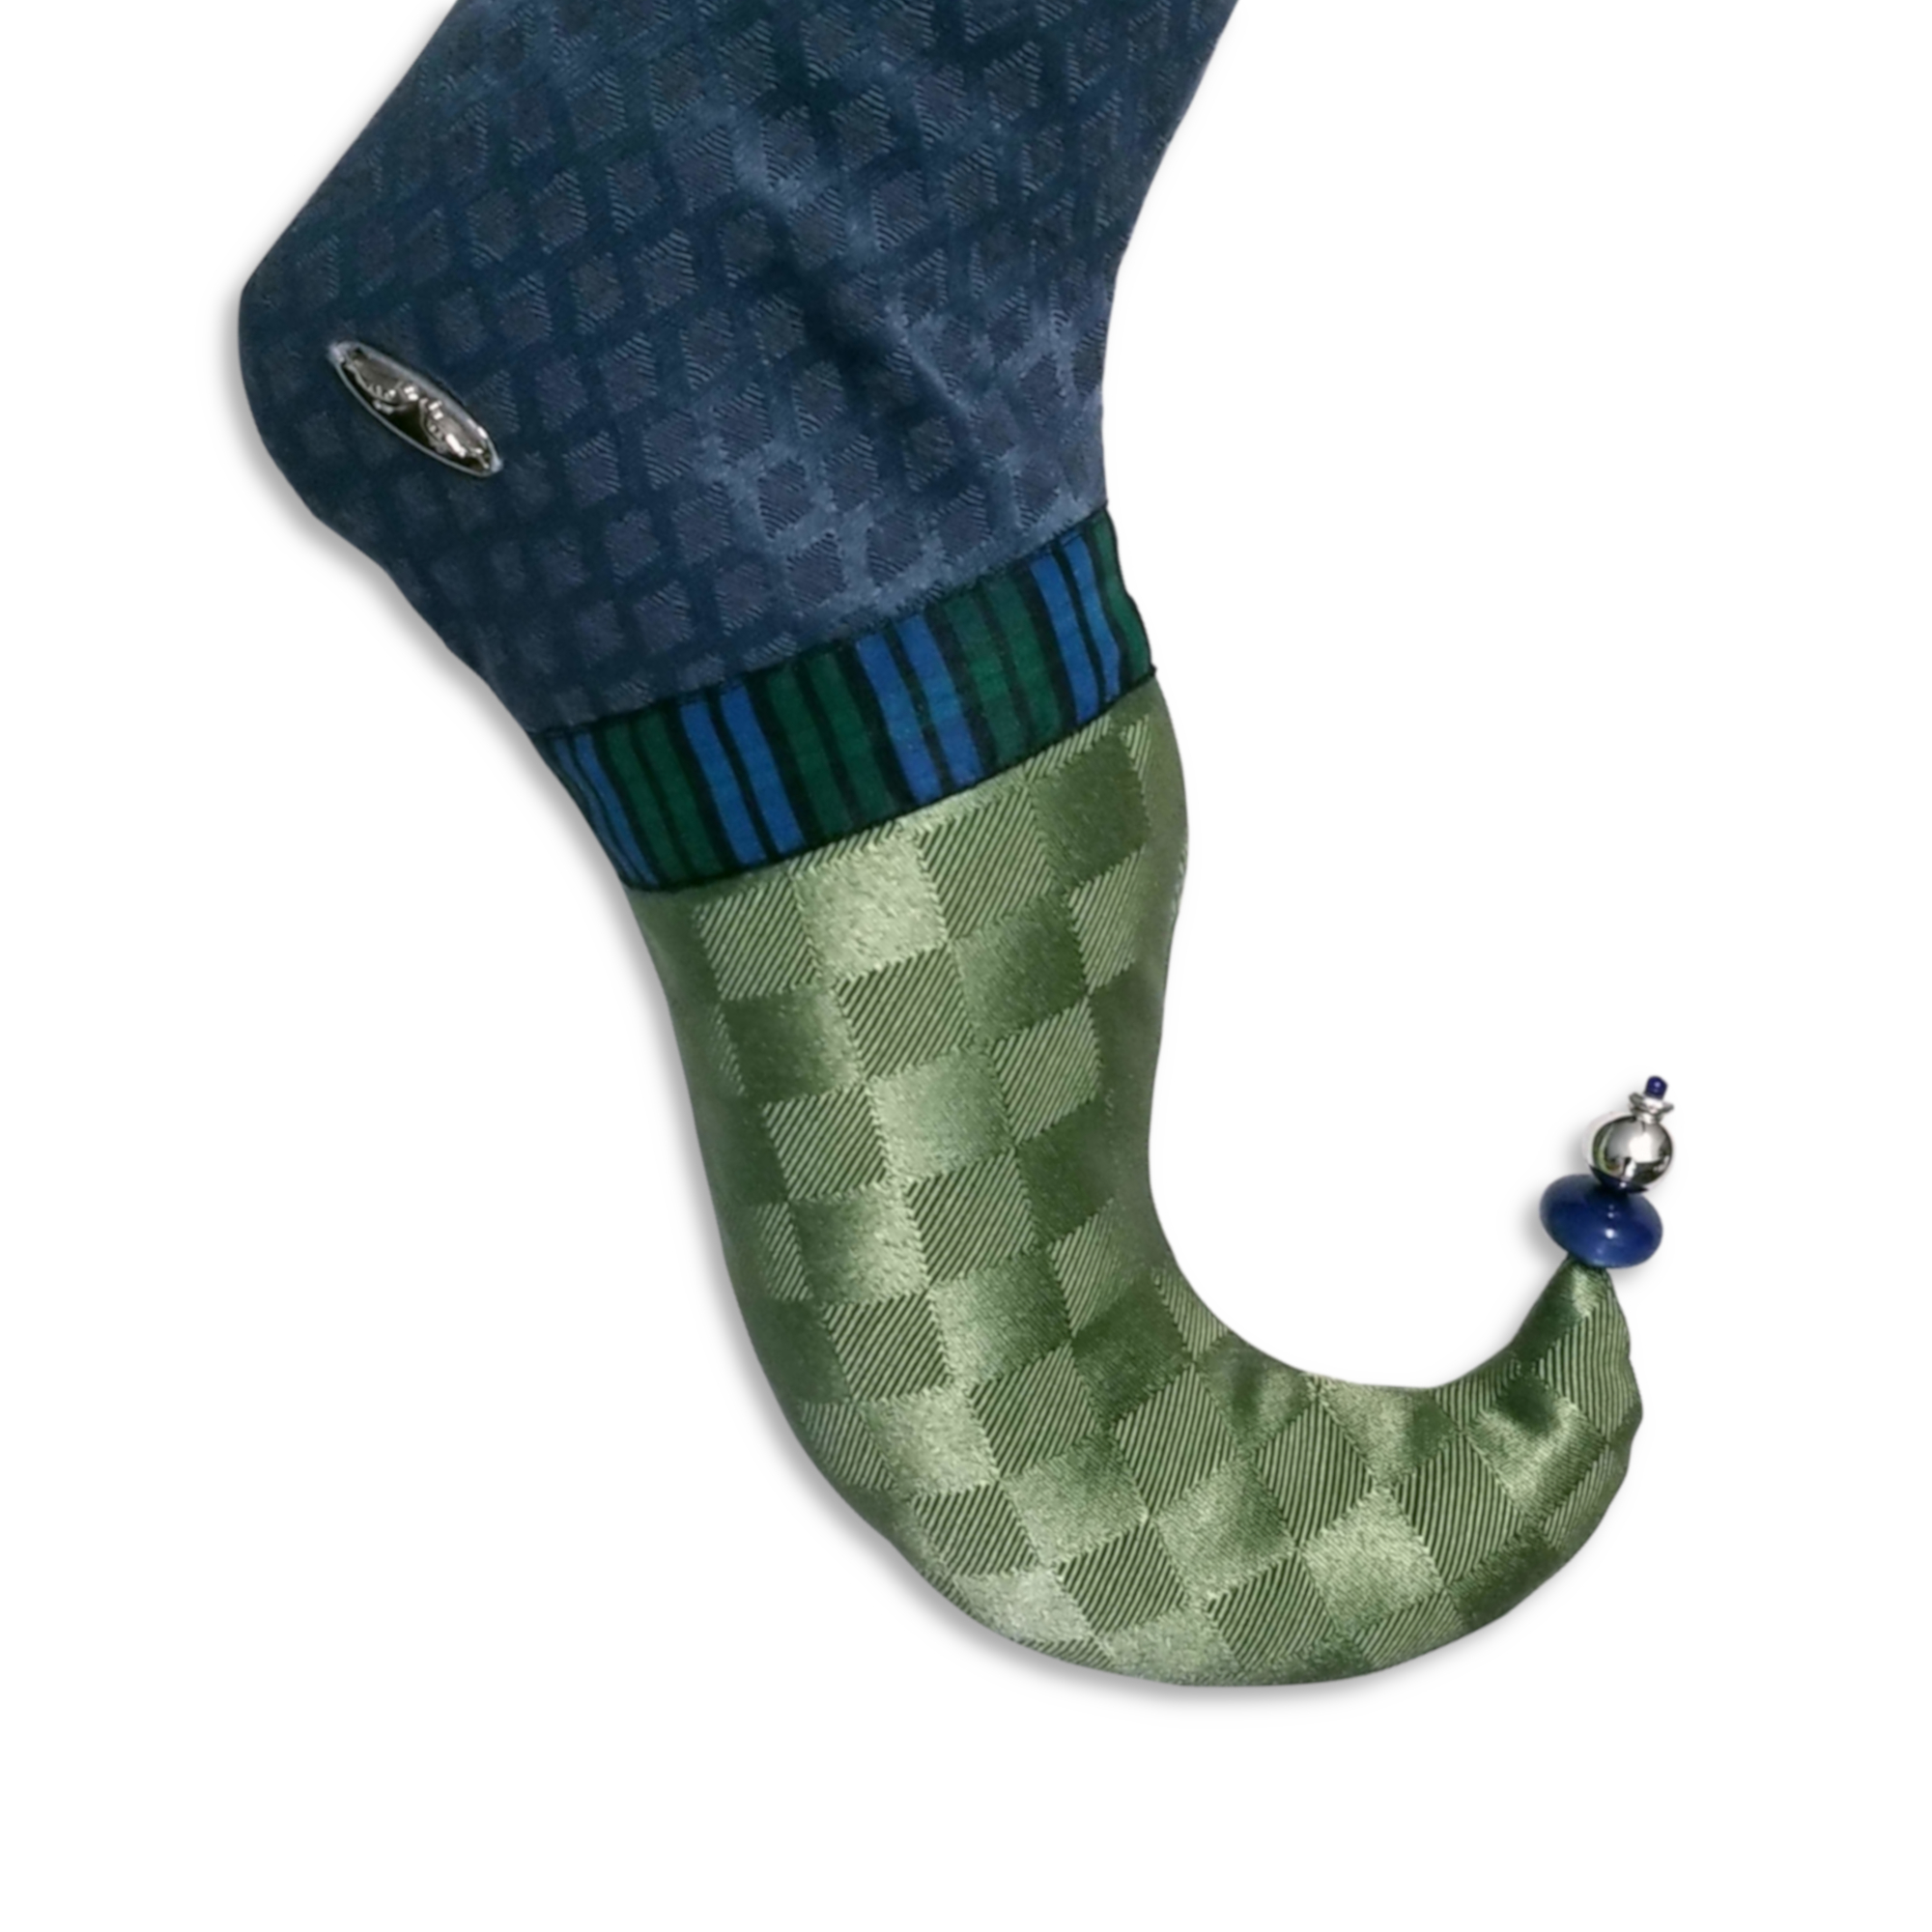 Pied courbé du bas de Noël Willi en jacquard vert avec un ruban en plaid bleu et vert. Le pied se termine en pointe avec des perles bleues et argent.